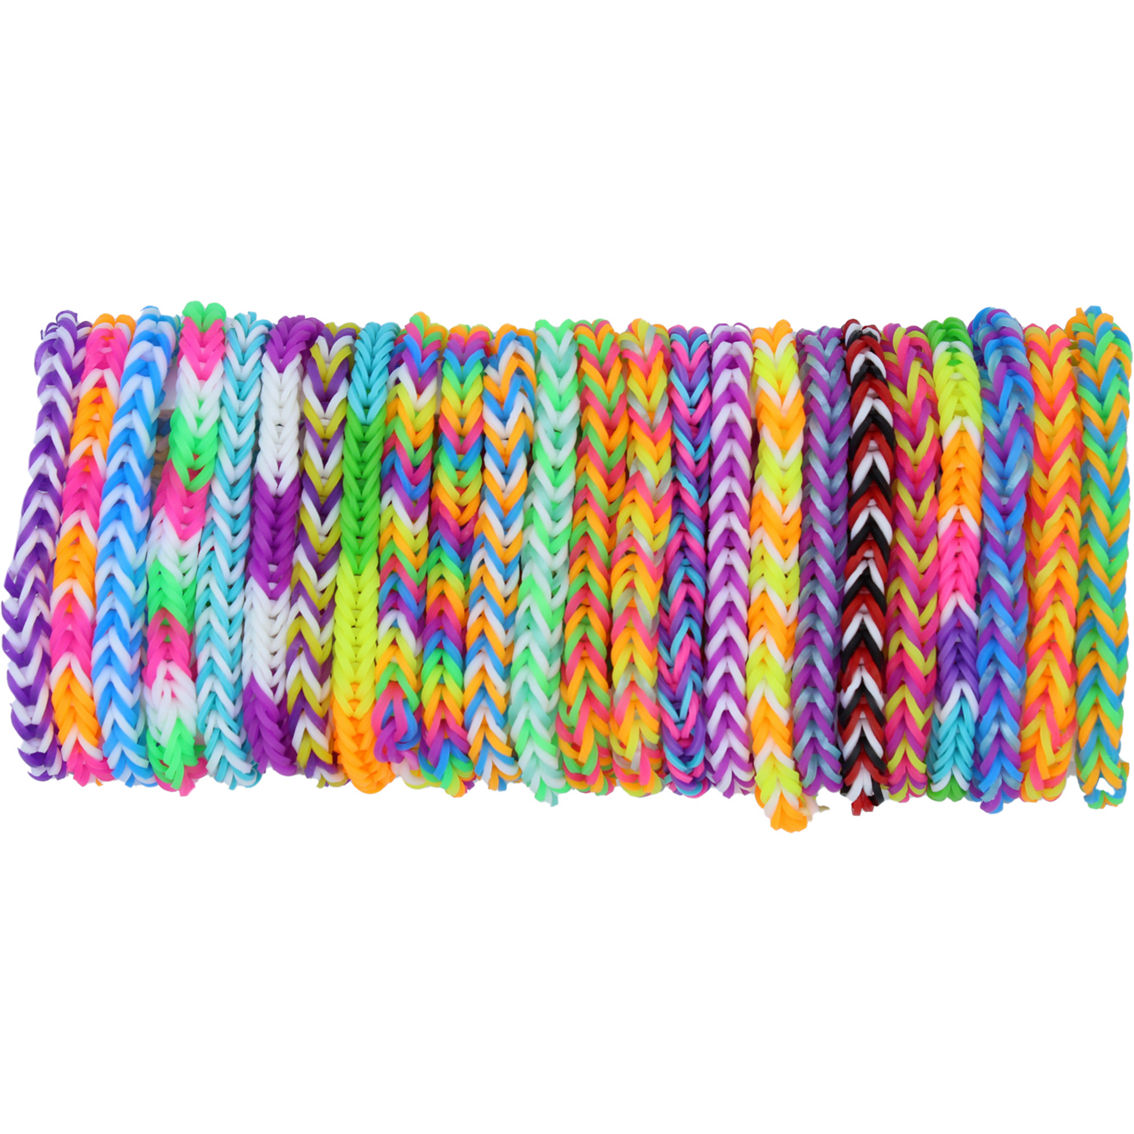 Rainbow Loom Bracelet Craft Kit - Image 4 of 5